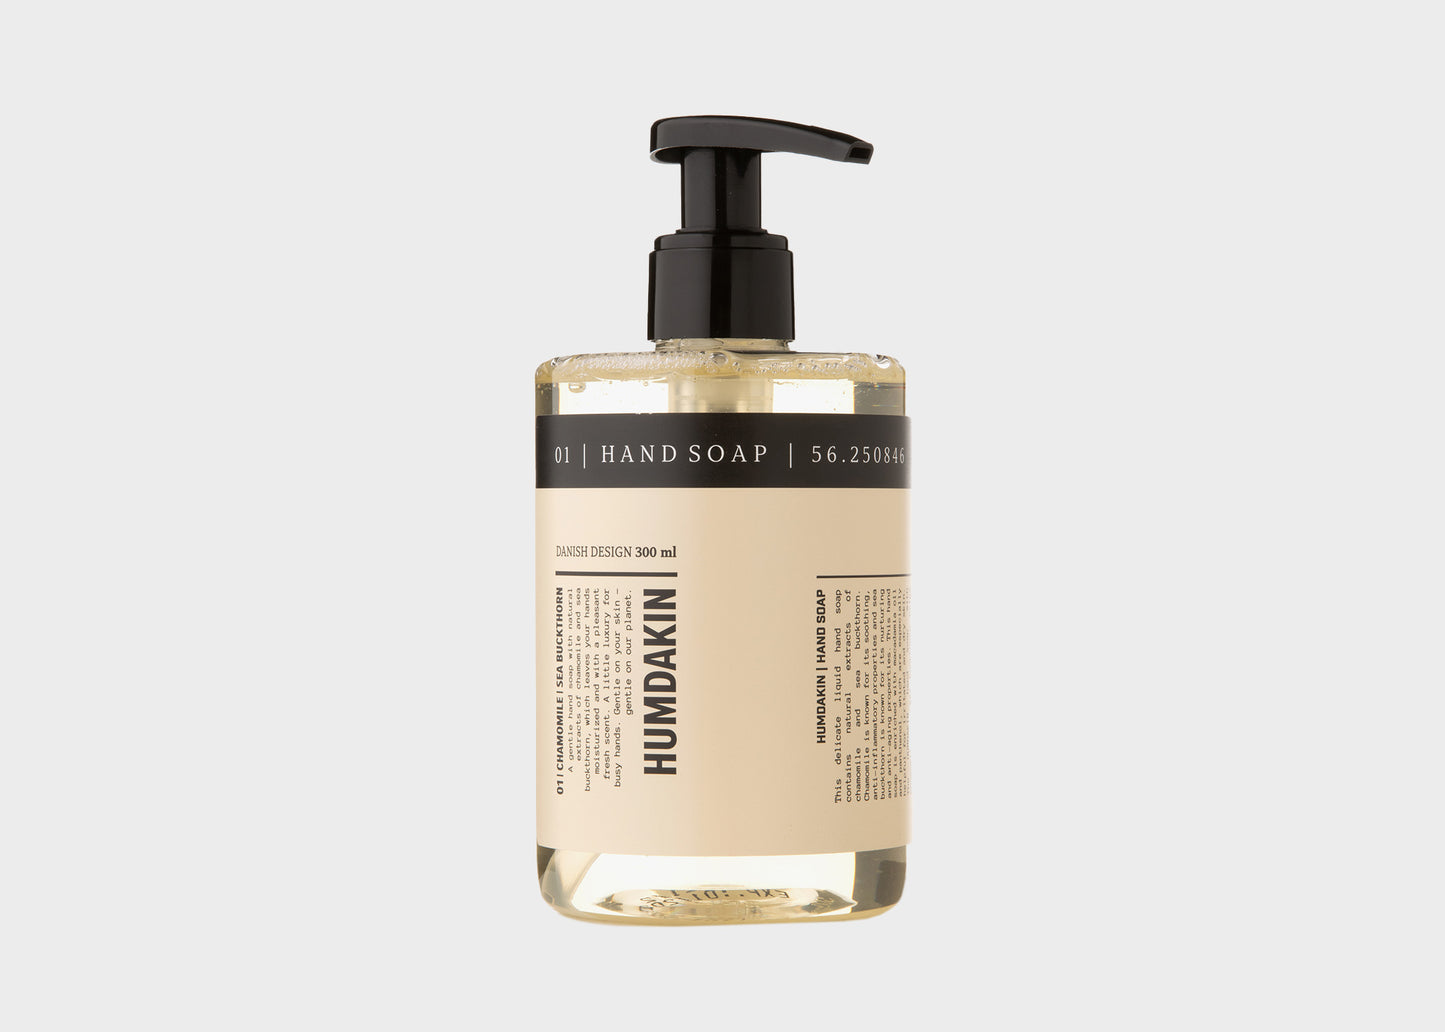 
                  
                    01 Hand Soap - Chamomile & Sea Buckthorn by Humdakin
                  
                